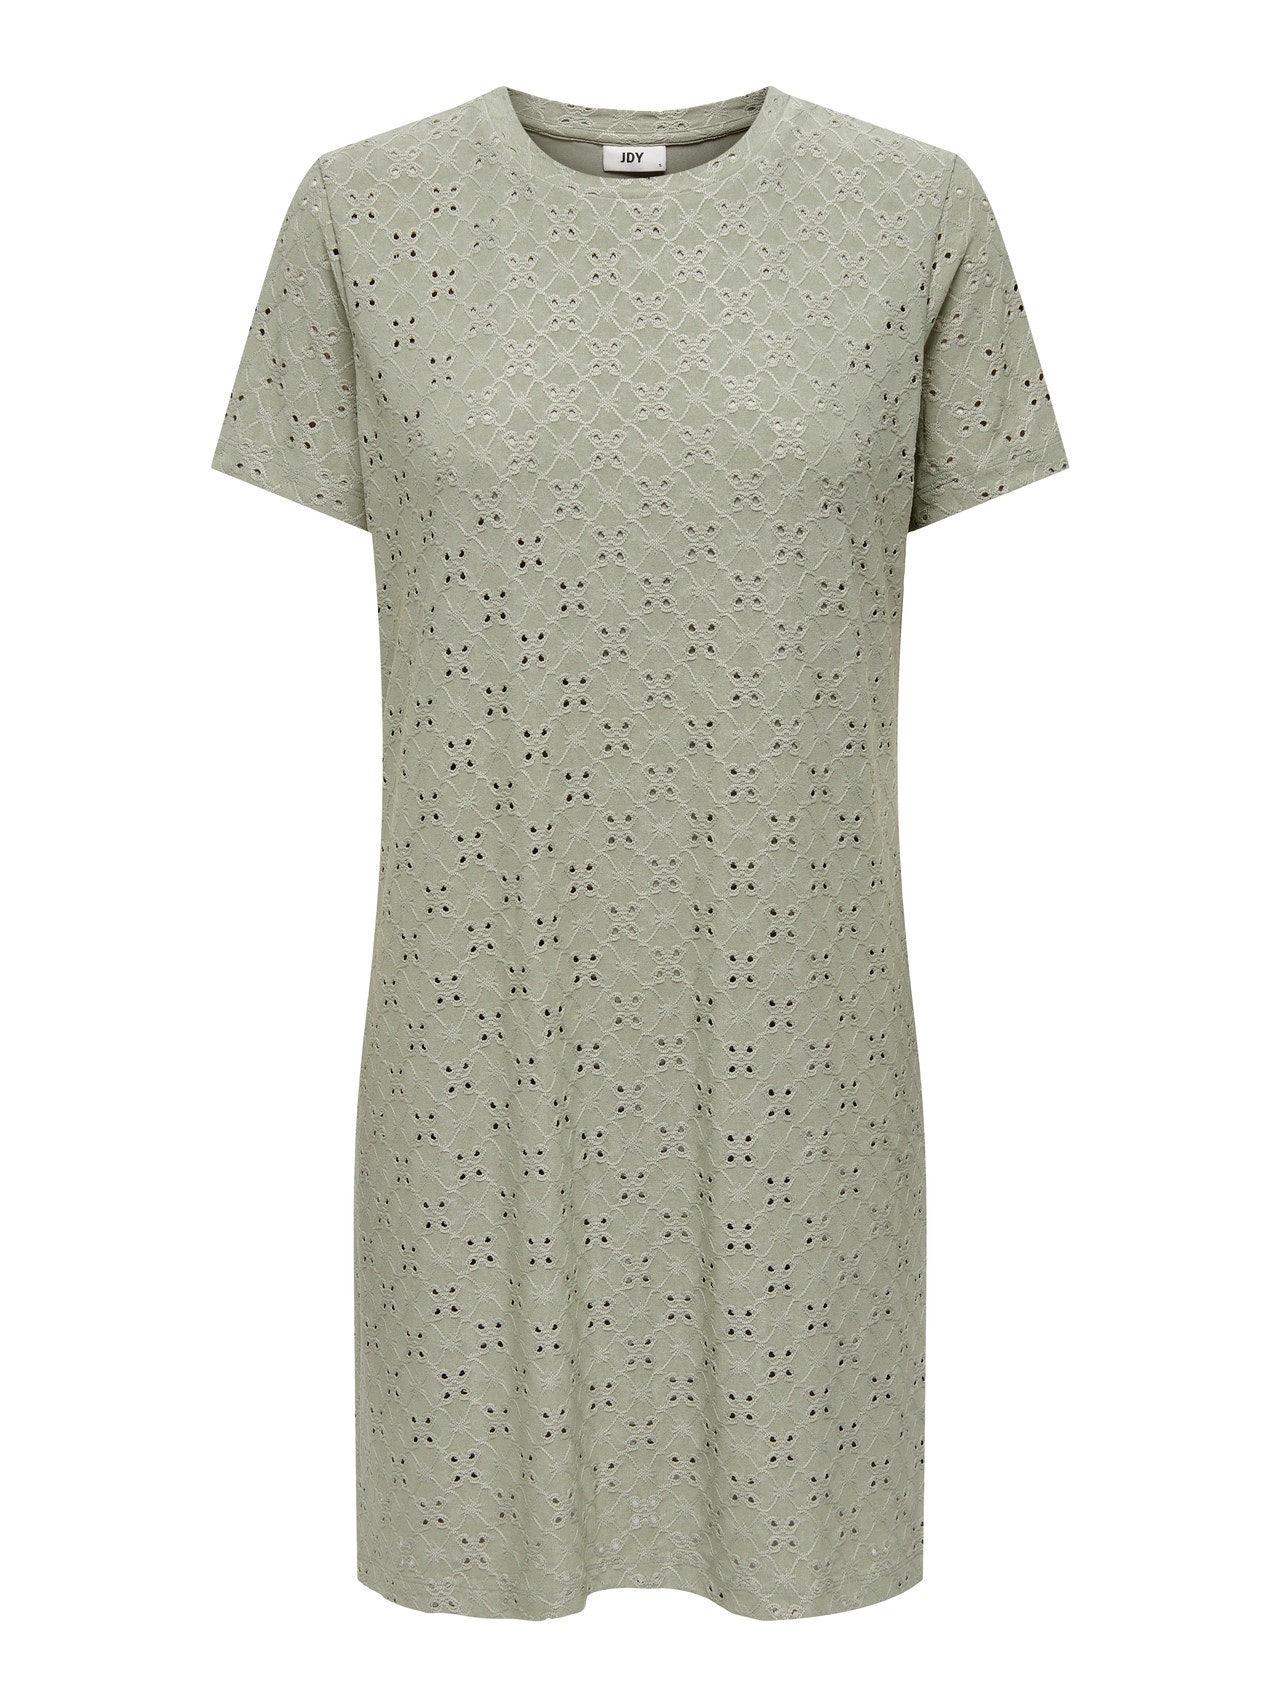 ONLY Short T-Shirt Dress -Seagrass - 15291942